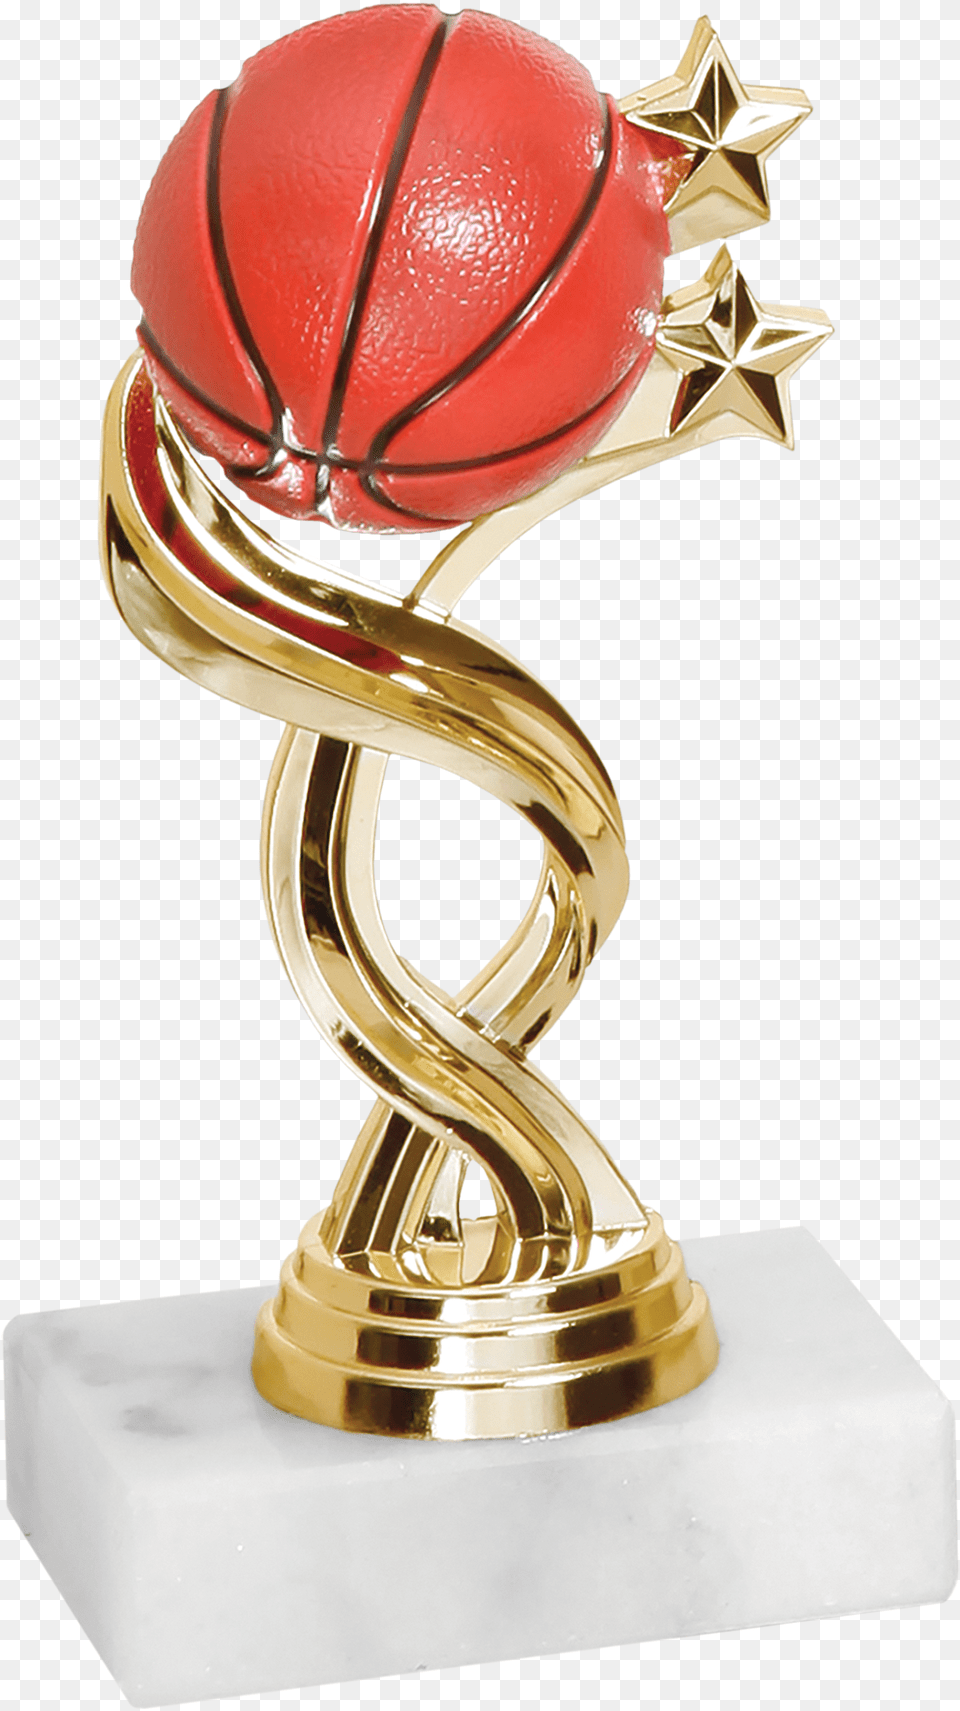 Trophy Basketball Trophy Transparent Png Image